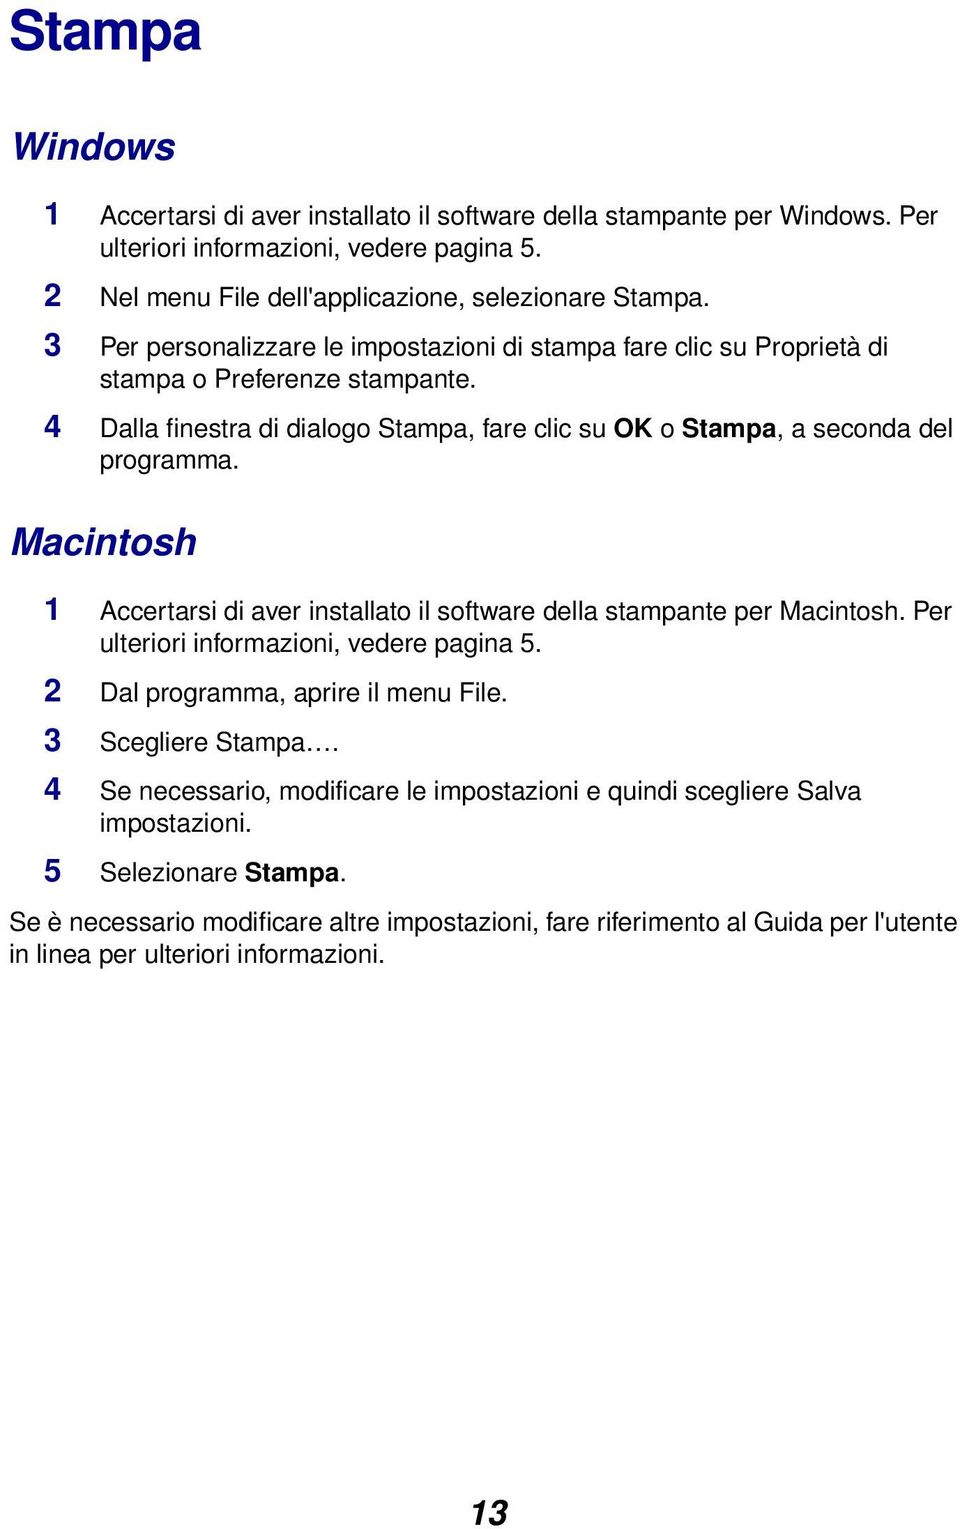 Macintosh 1 Accertarsi di aver installato il software della stampante per Macintosh. Per ulteriori informazioni, vedere pagina 5. 2 Dal programma, aprire il menu File. 3 Scegliere Stampa.